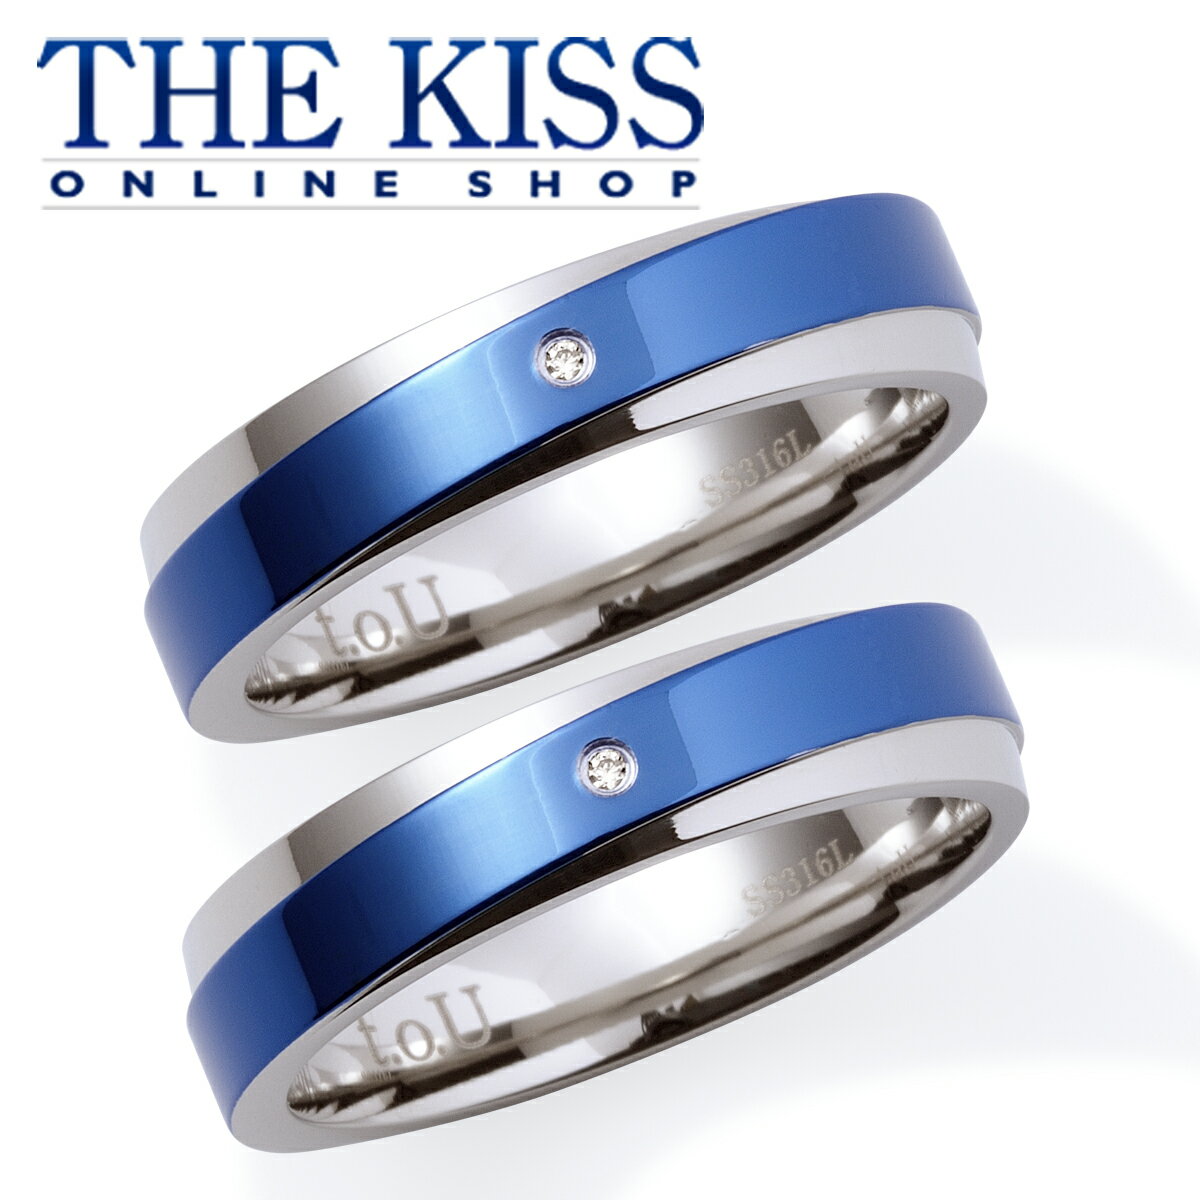 あす楽対応 The Kiss 公式サイト ステンレス ペアリング ペアアクセサリー カップル に 人気 の ジュエリーブランド Thekiss ペア リング 指輪 記念日 プレゼント Tr9035dm P セット シンプル ザキス 送料無料 Ocruyo オクルヨ